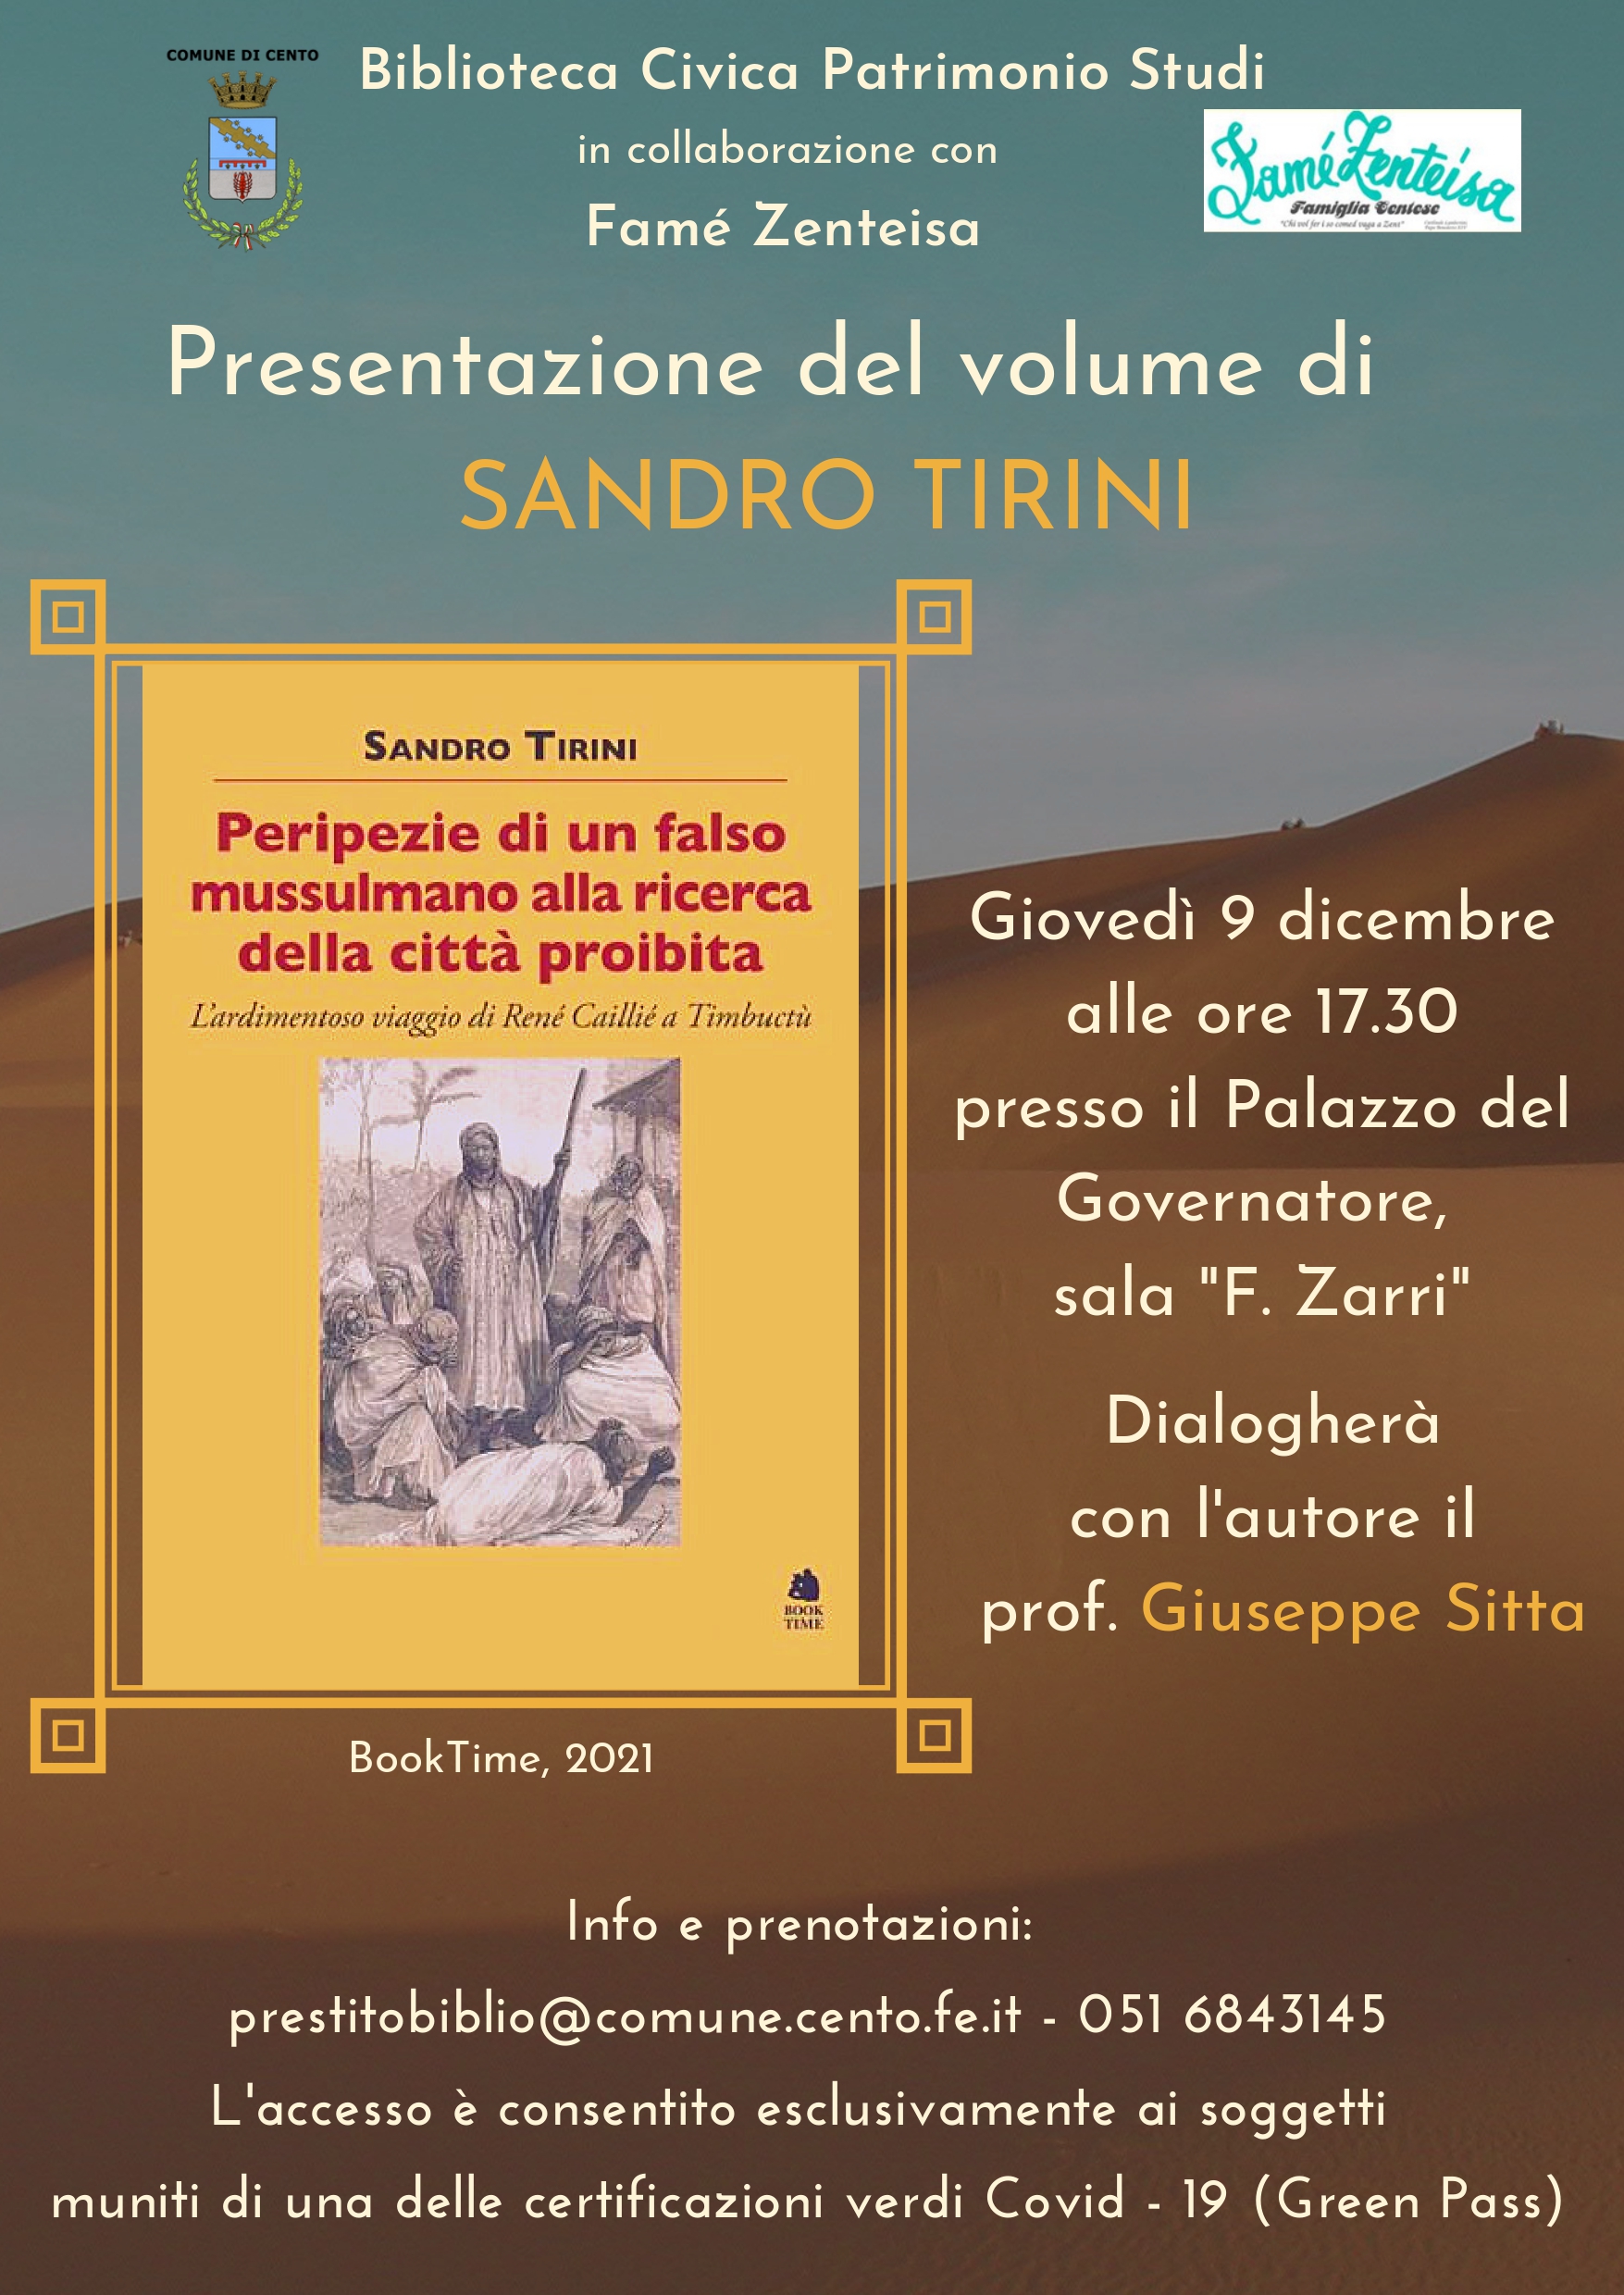 Copertina del volume di Sandro Tirini